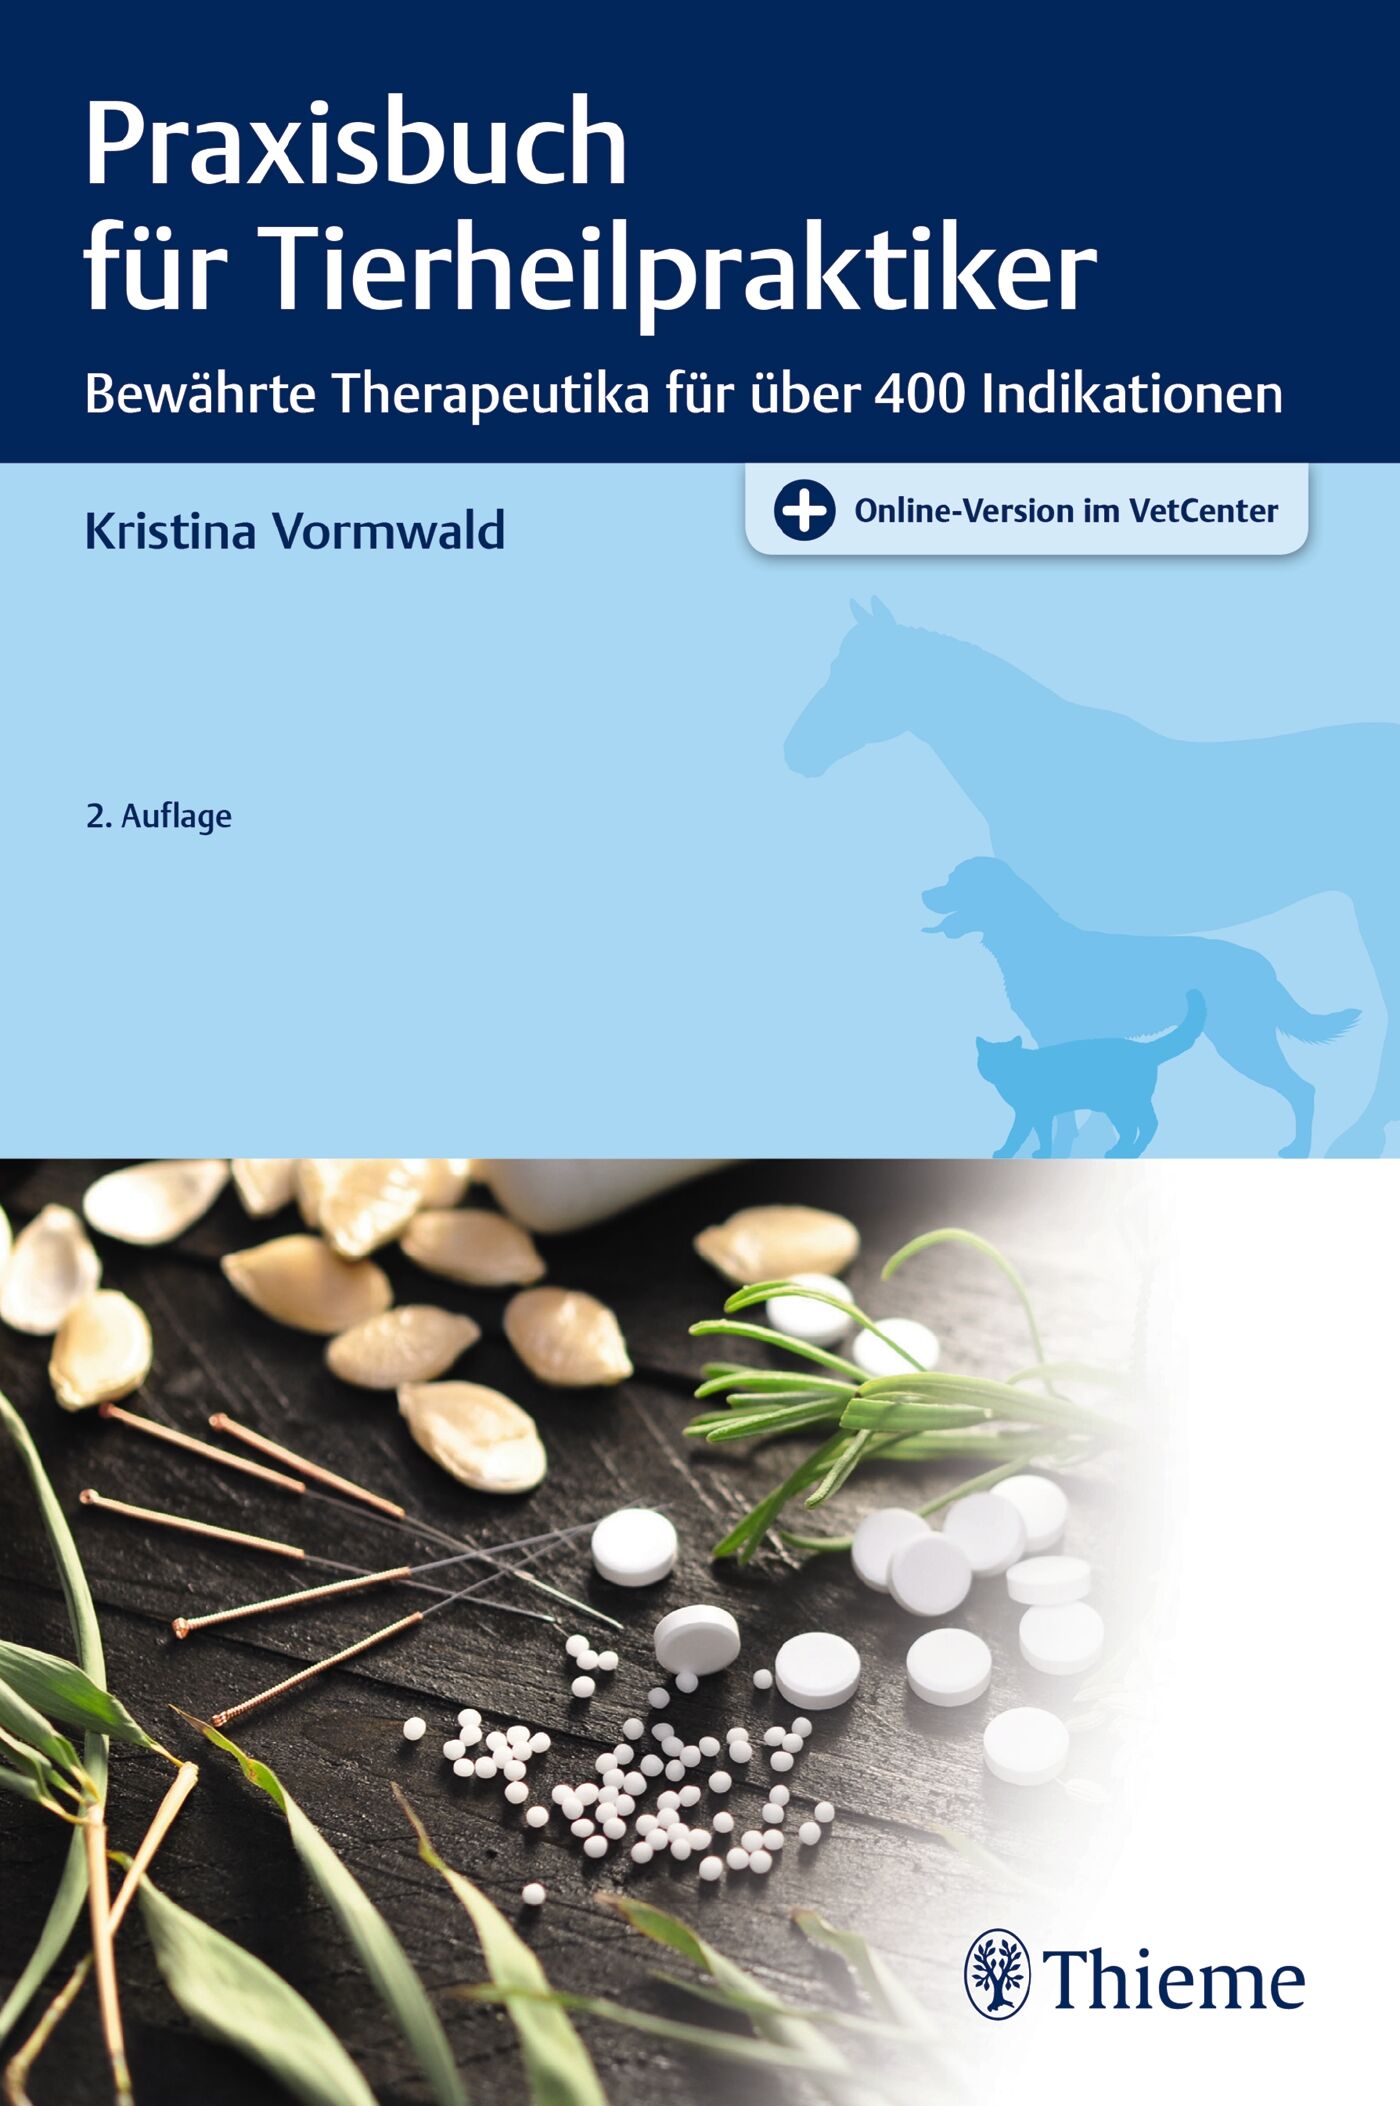 Praxisbuch für Tierheilpraktiker, 9783132430150